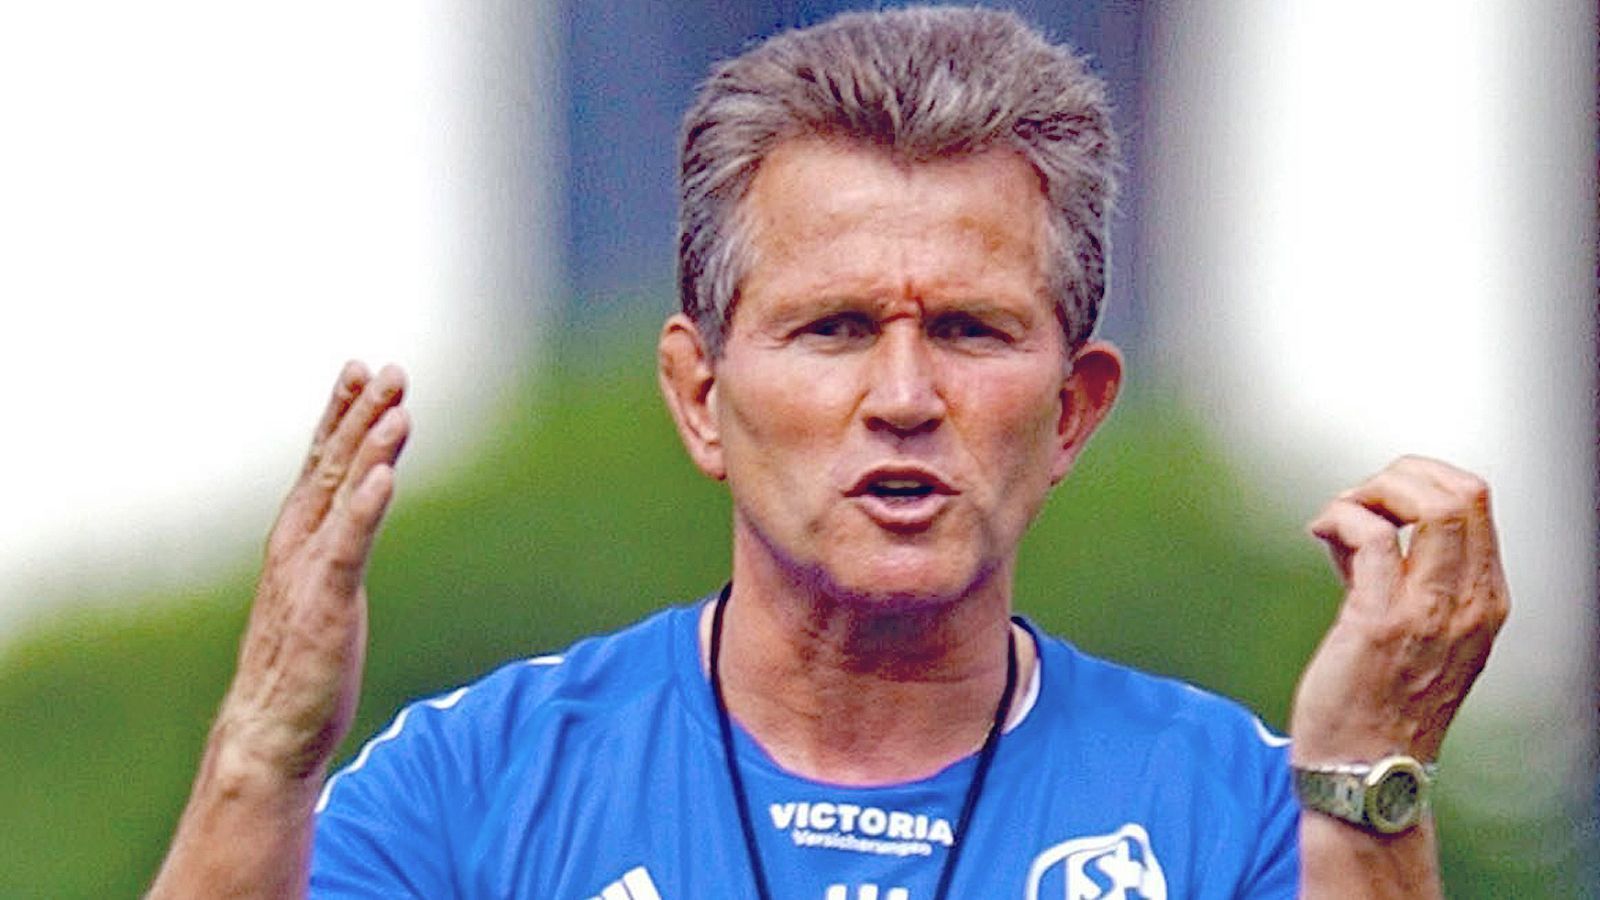 
                <strong>Trainer: Jupp Heynckes</strong><br>
                Oh ja, Freunde. Jupp Heynckes war mal Chef-Trainer des FC Schalke 04. Der "Don Jupp", dem die Münchner viele Jahre später das Triple zu verdanken hatten. Die Saison 2003/2004 lief noch passabel, jedoch spielte Schalke in der Rückrunde keinen attraktiven Fußball. Da wurde Assauer bereits deutlich: "Der Jupp ist ein Fußballer der alten Schule, aber wir haben 2004". Nach dem schlechtesten Saisonstart der Vereinsgeschichte zur Spielzeit 2004/2005 wurde Heynckes beurlaubt. Doch der spätere Meistertrainer bezeichnete die Zeit auf Schalke als eine der effizientesten seiner Trainerlaufbahn.
              